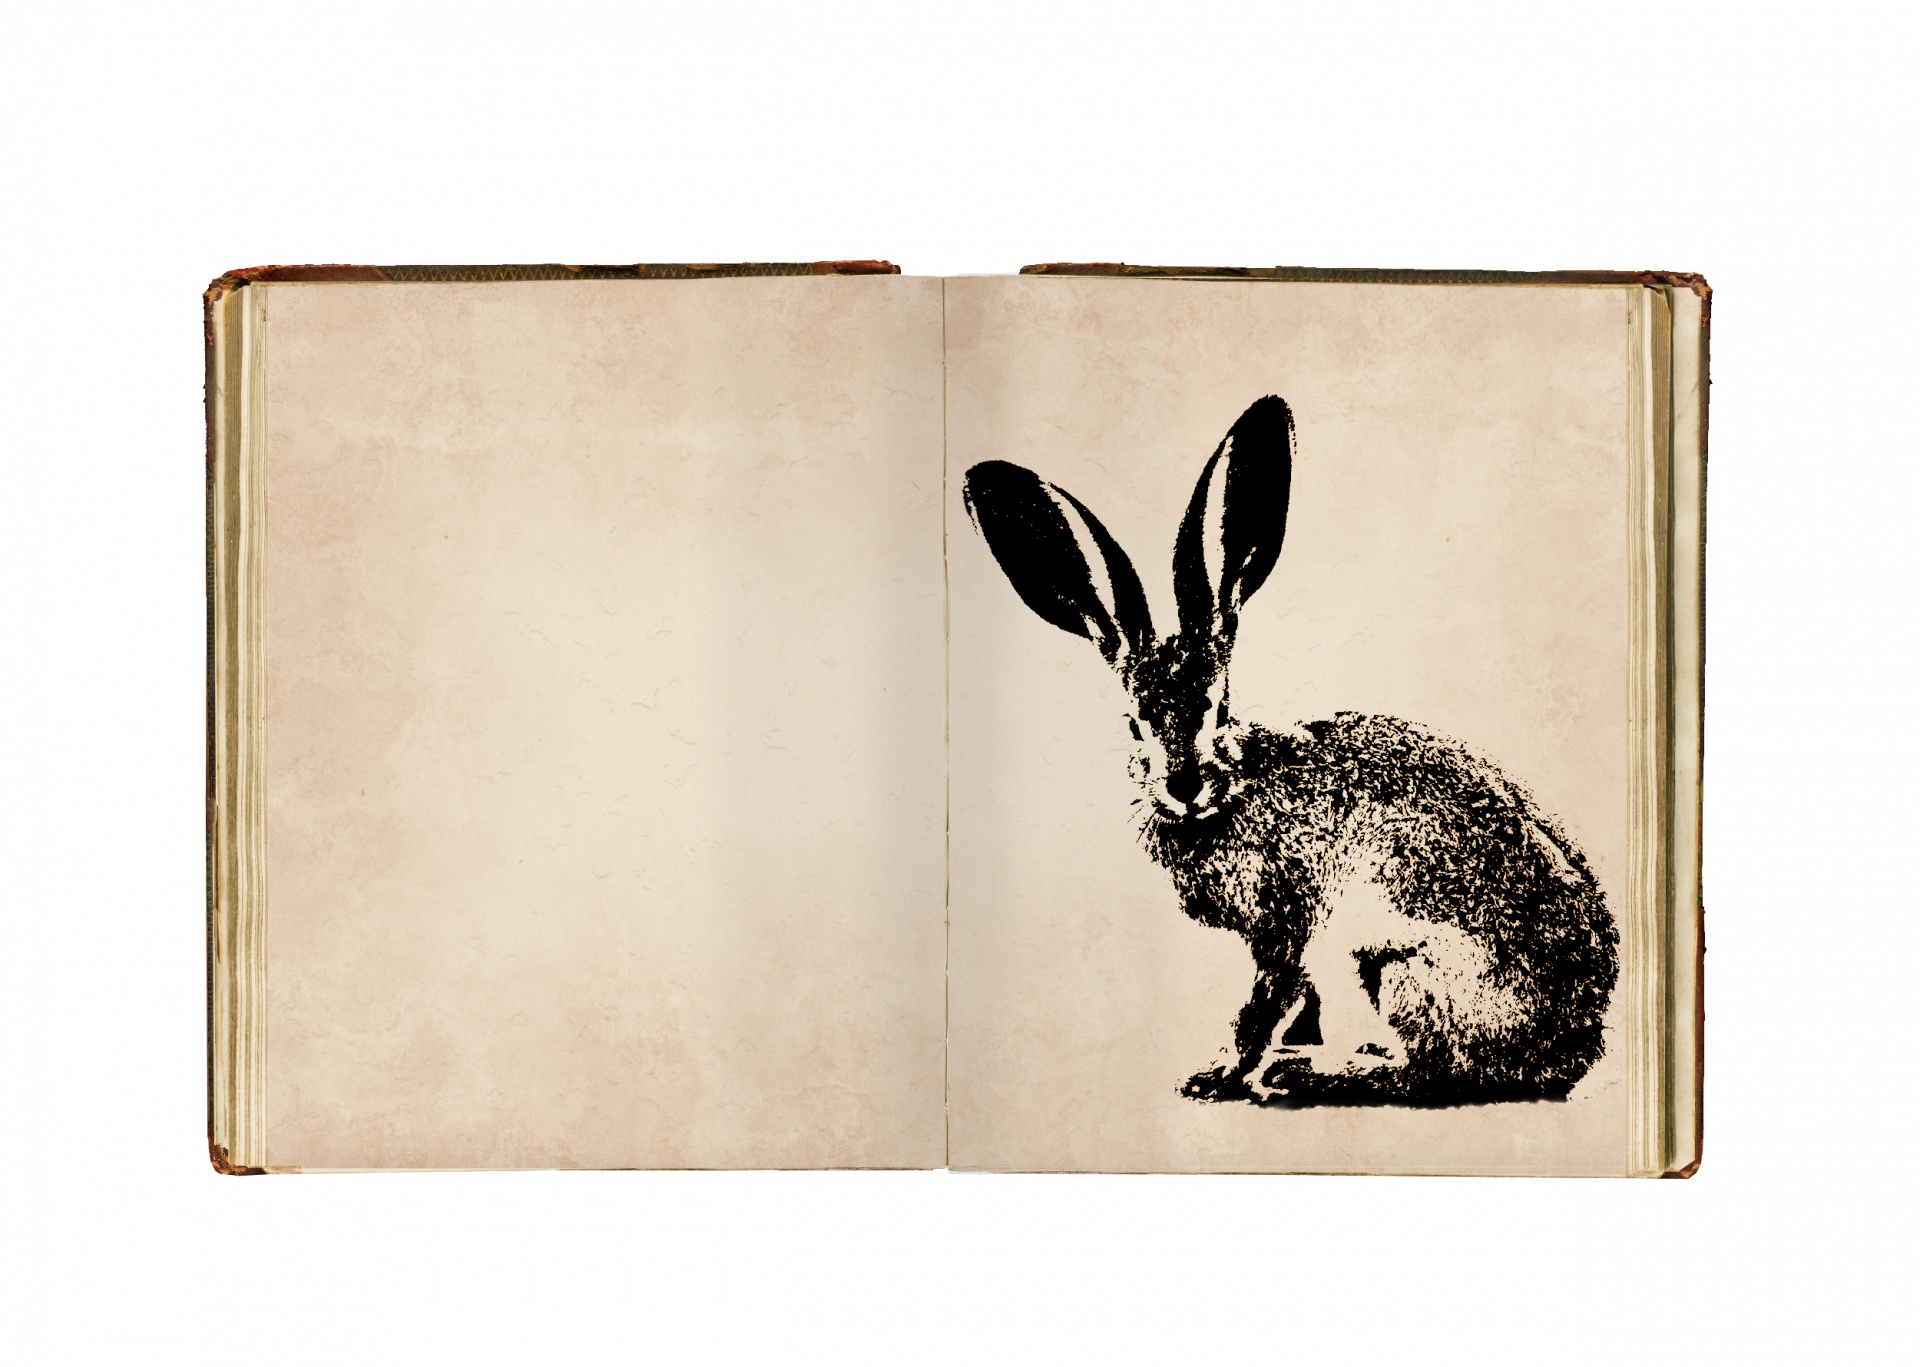 Vintage illustration of hare in a sketchbook